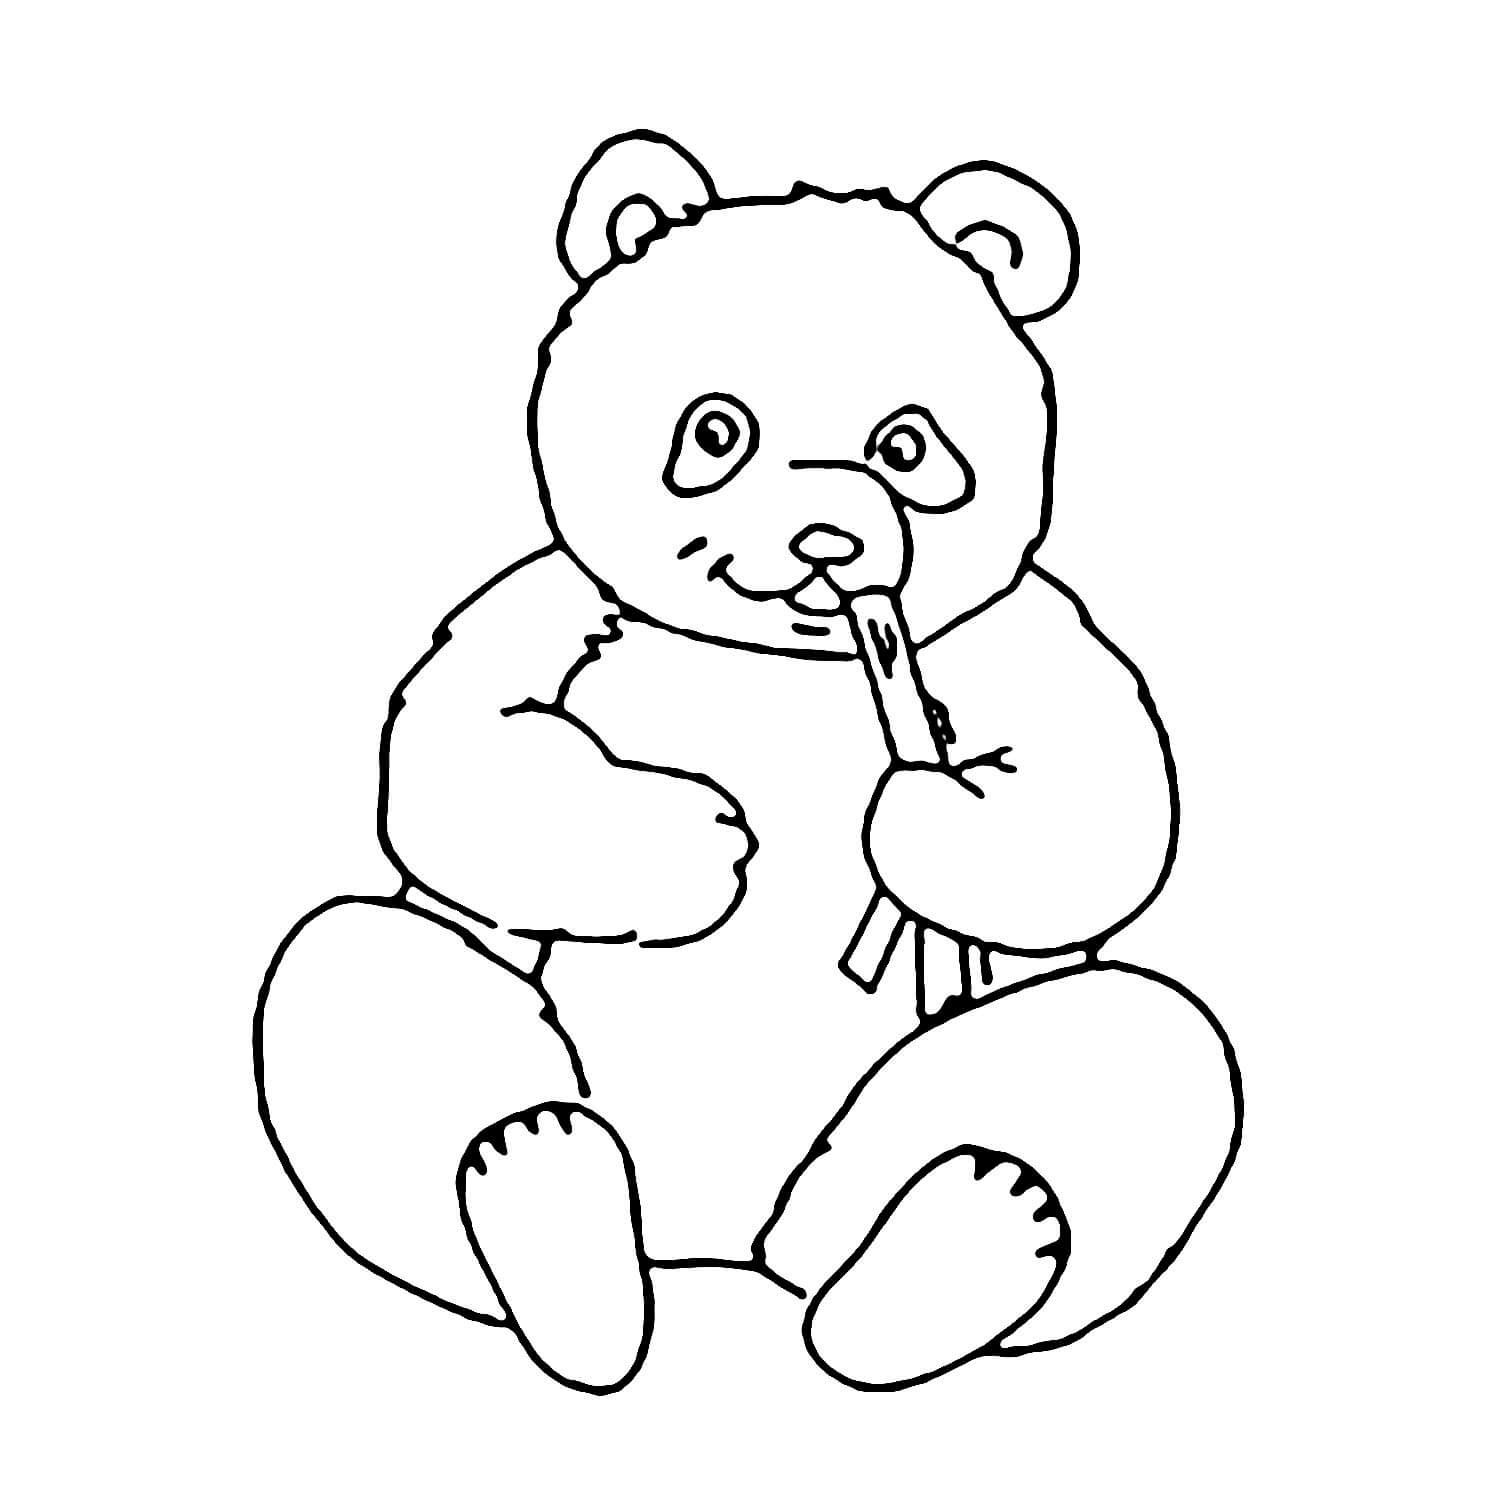 Cómo dibujar un Oso Panda Kawaii   COMODIBUJARCLUB